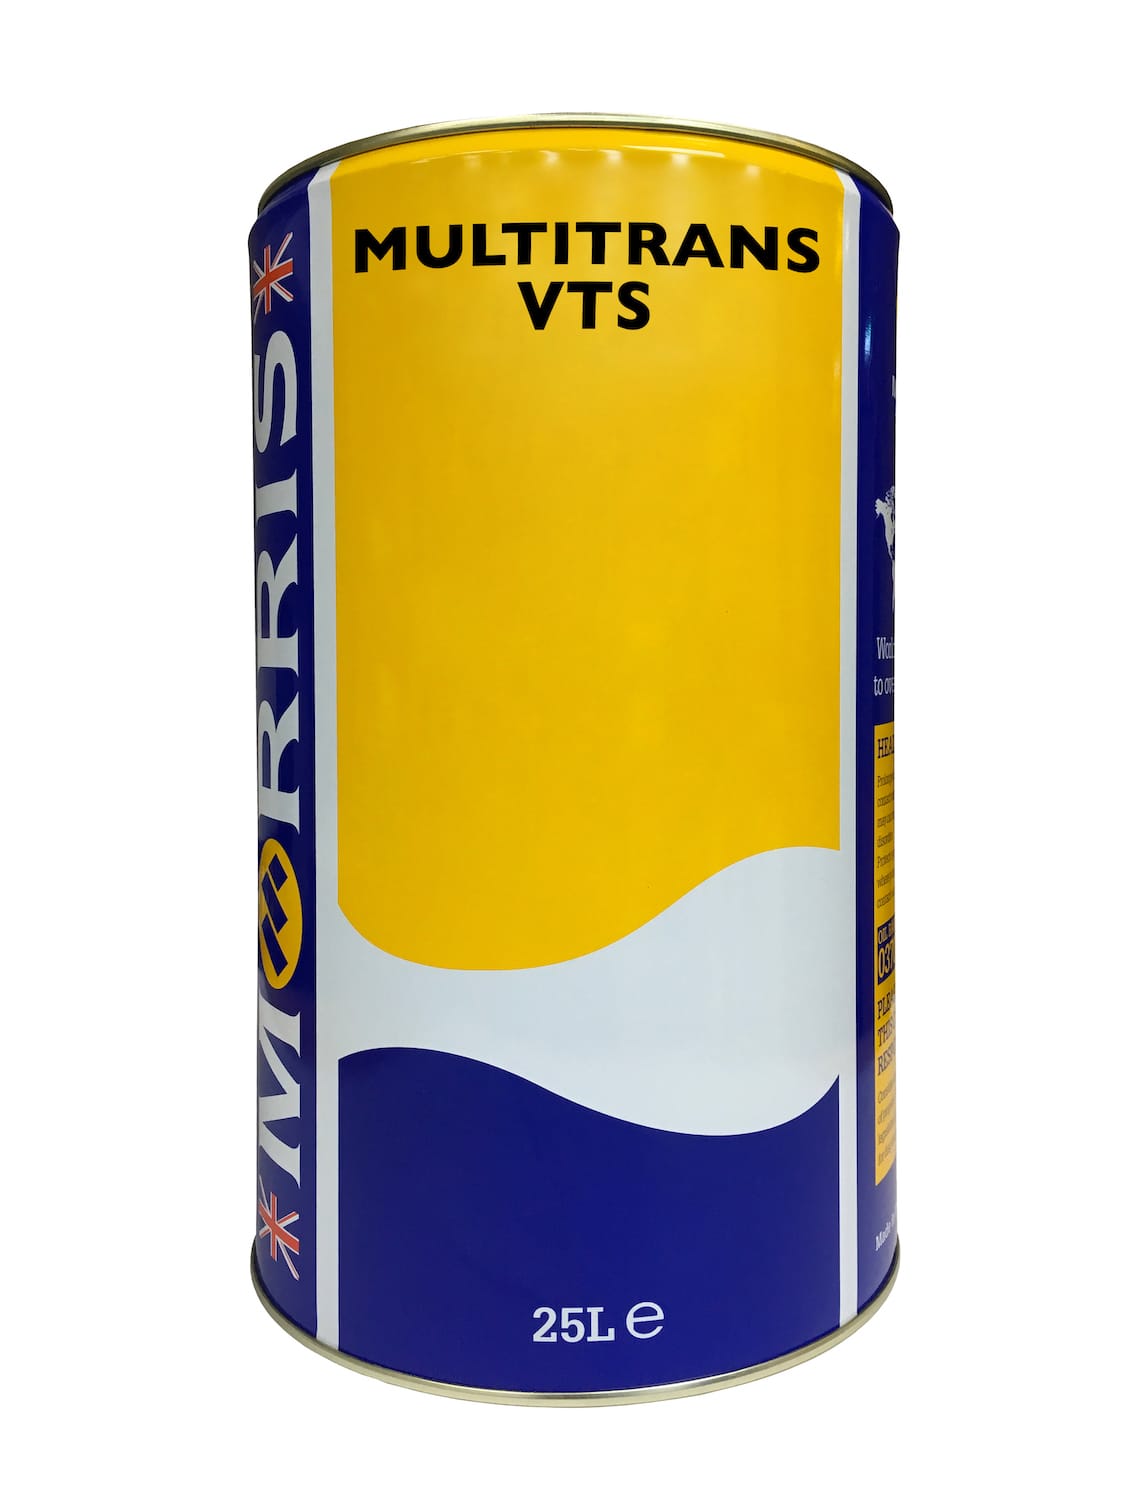 Multitrans VTS